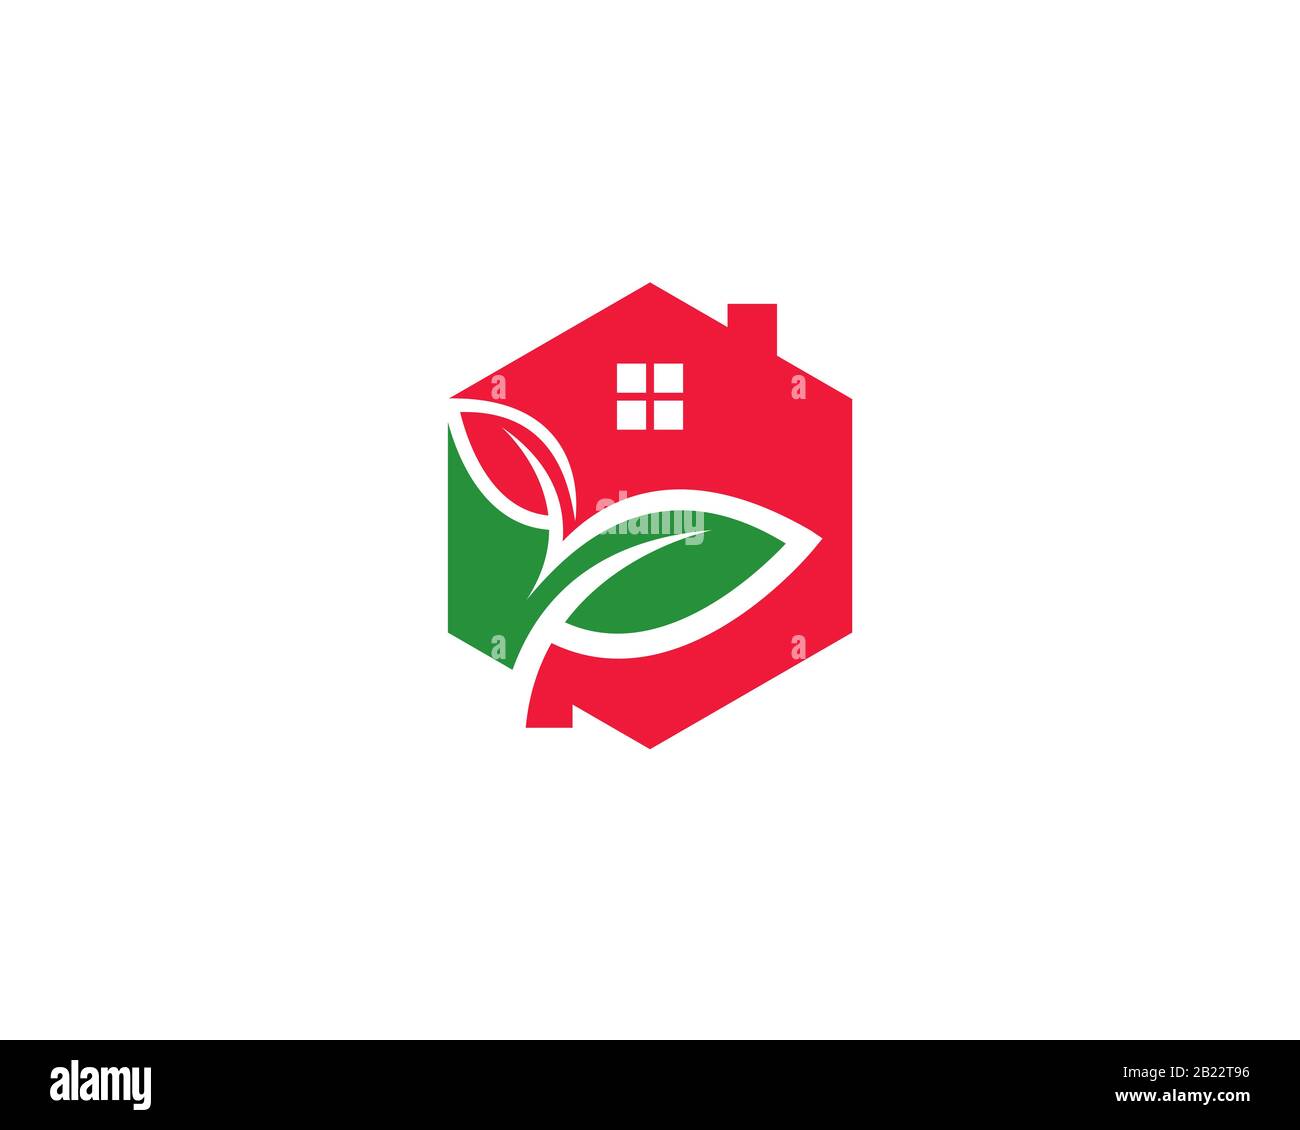 logo hexagonal maison avec espace négatif feuilles montrant un maison durable de bâtiment écologique Illustration de Vecteur